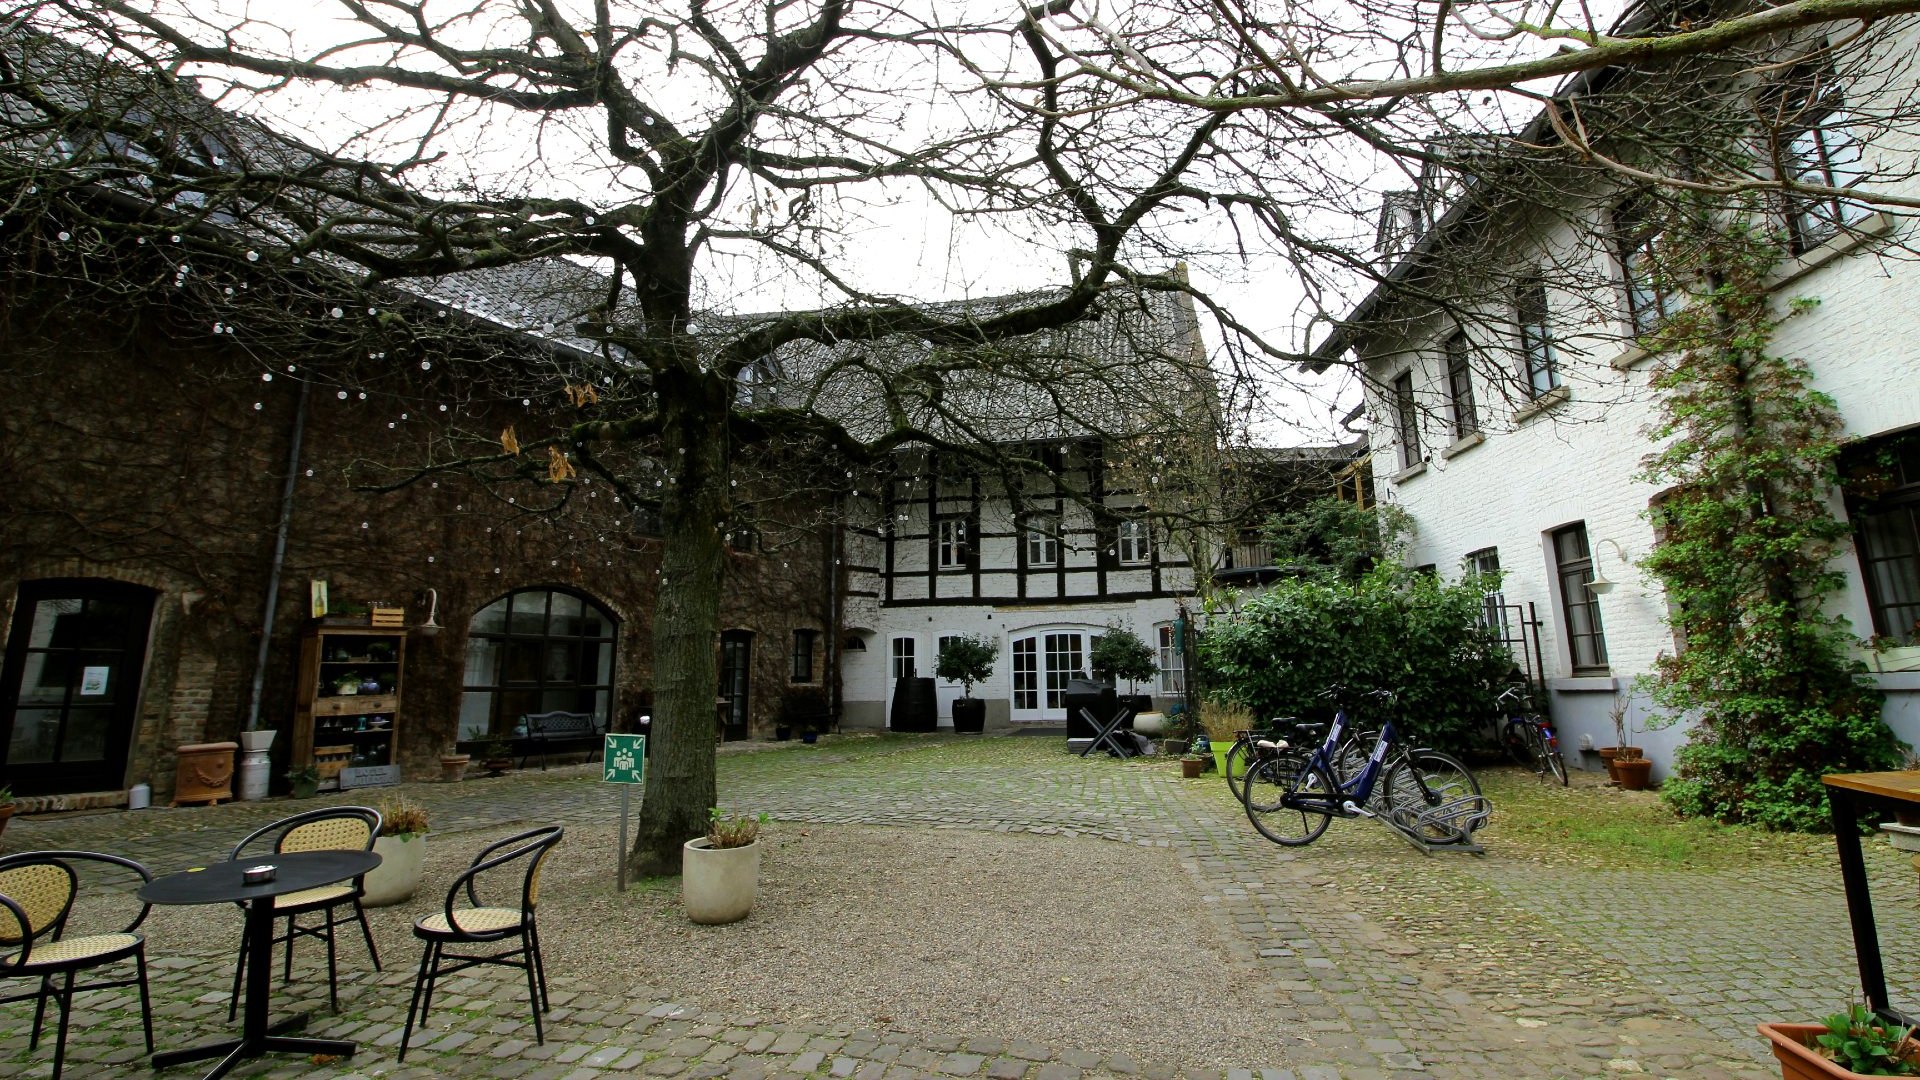 Landhaus Danielshof, Bedburg Alt-Kaster, © Tourismus NRW e.V., Hannah Förster